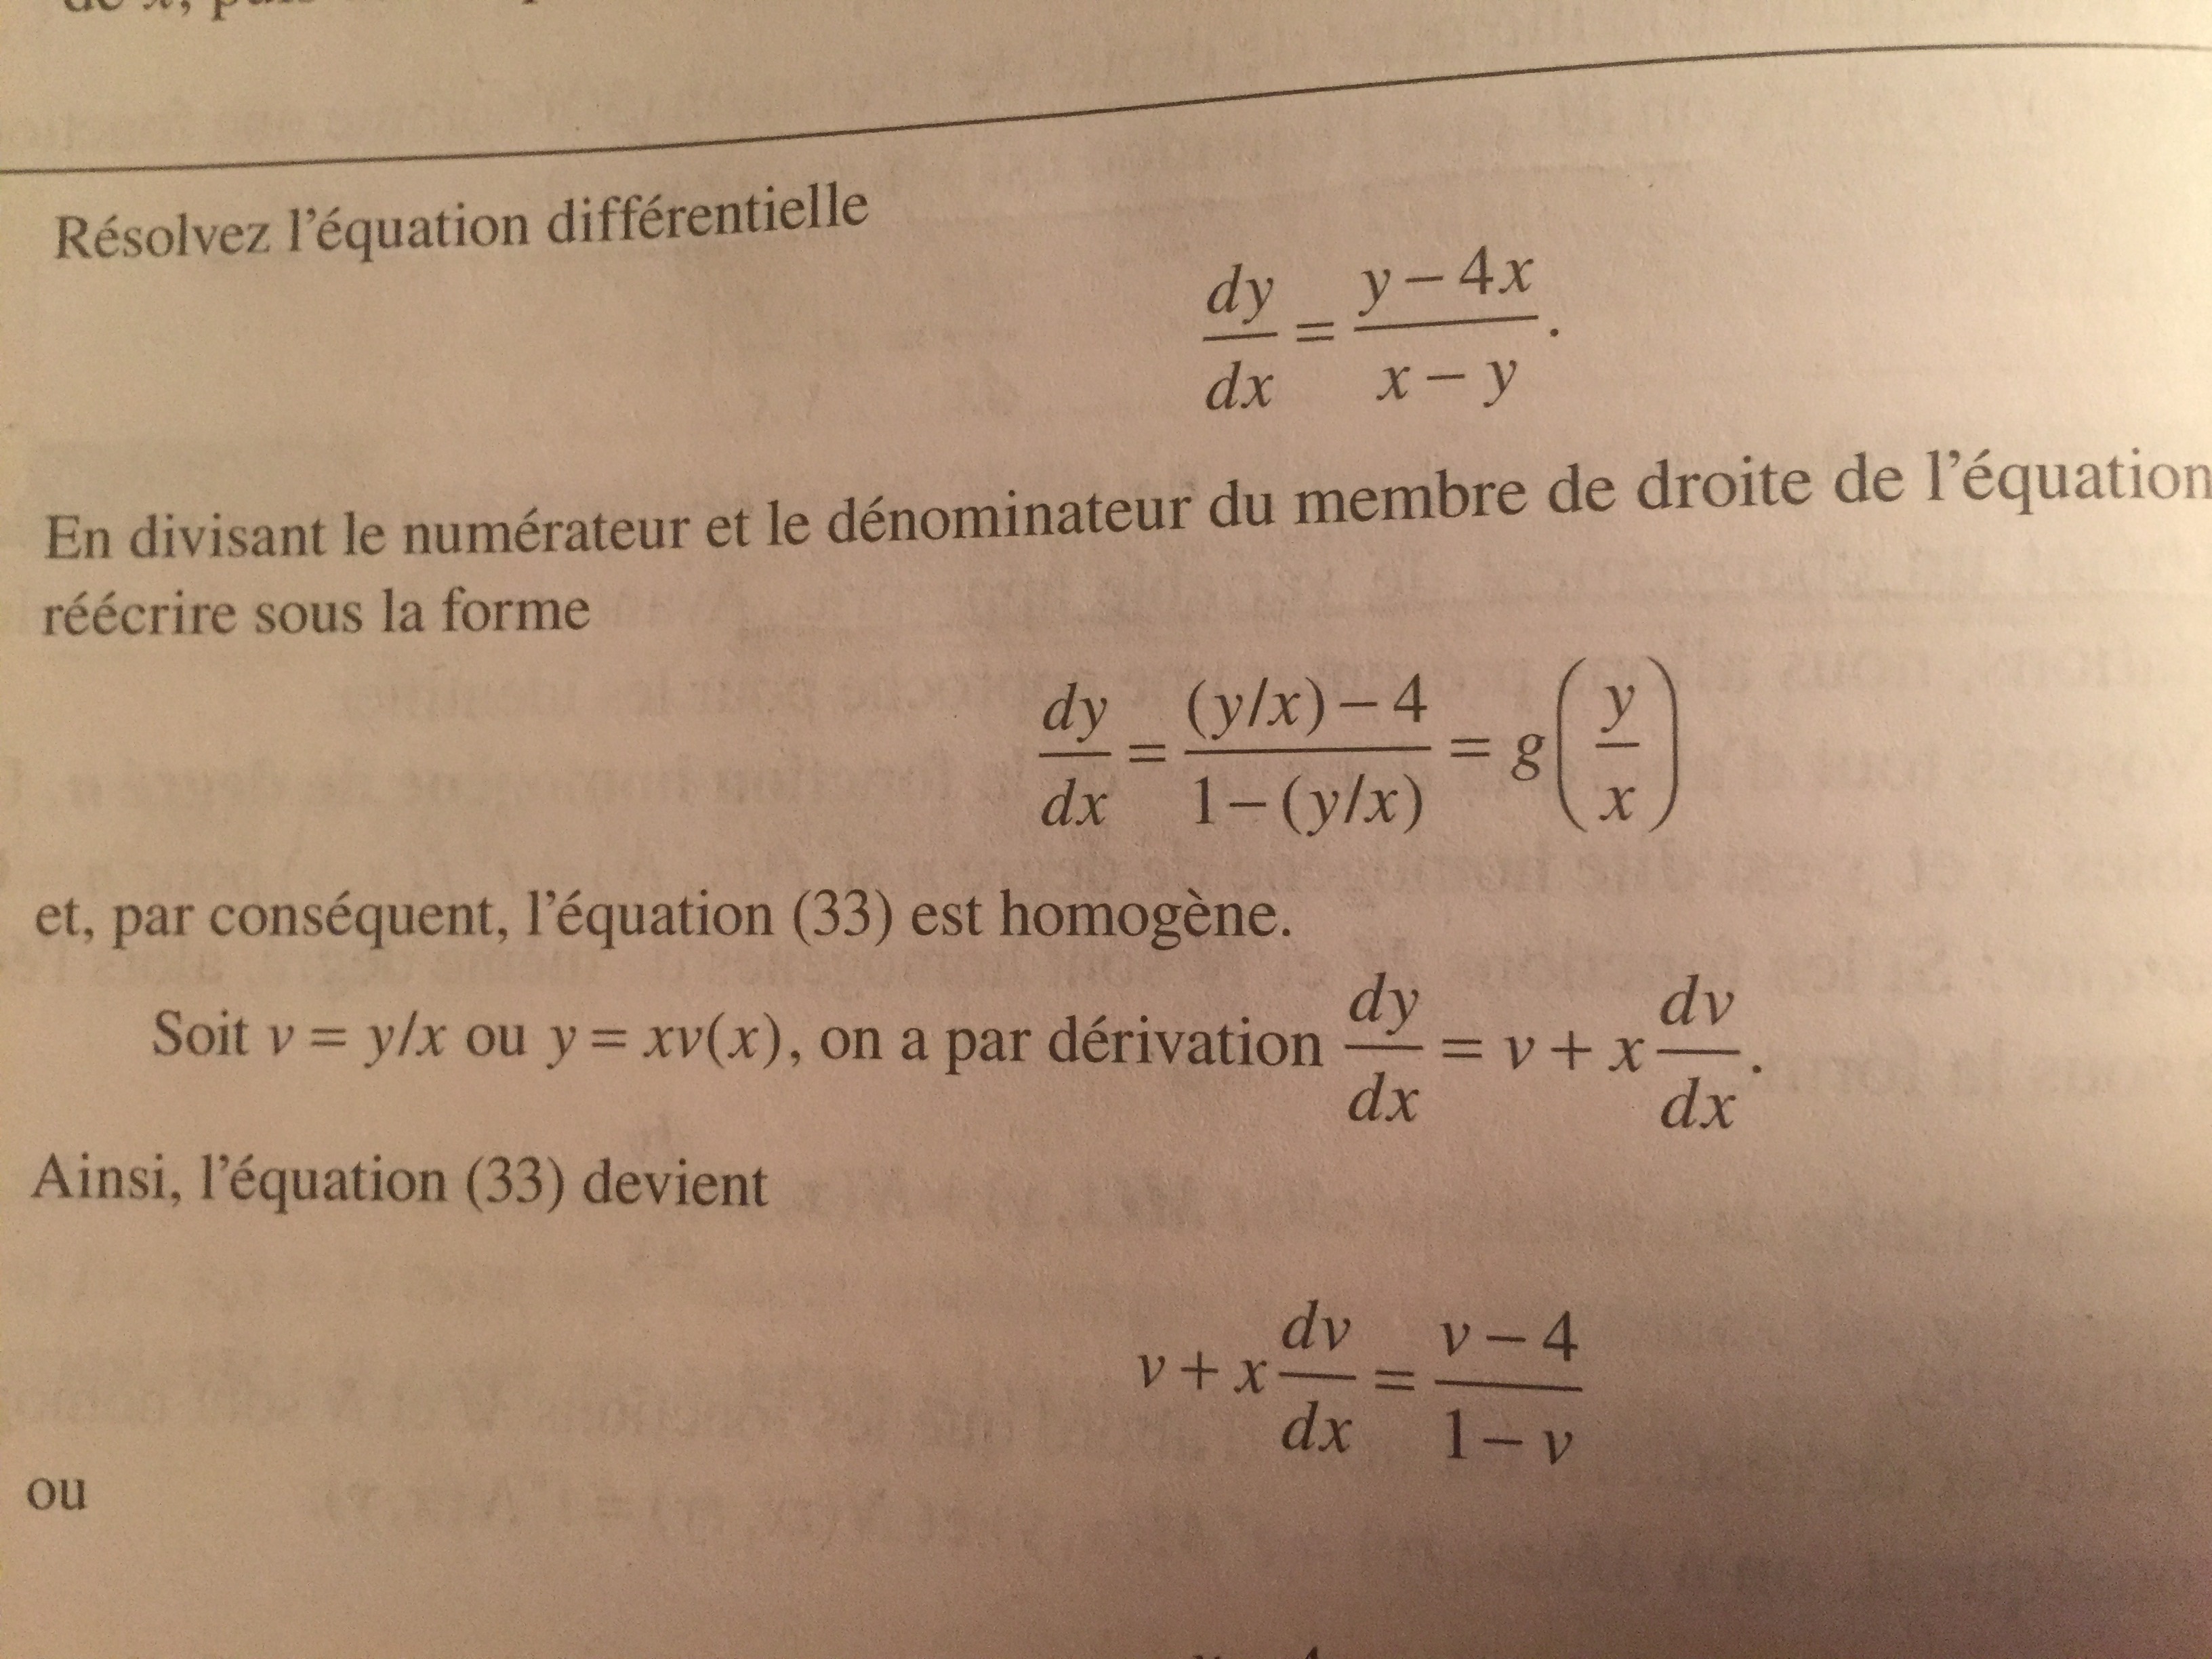 Équations différentielles 2e édition par Boyce et Diprima, adapt. par Donatien N'Dri, chapître 2, p.34, exemple 4.